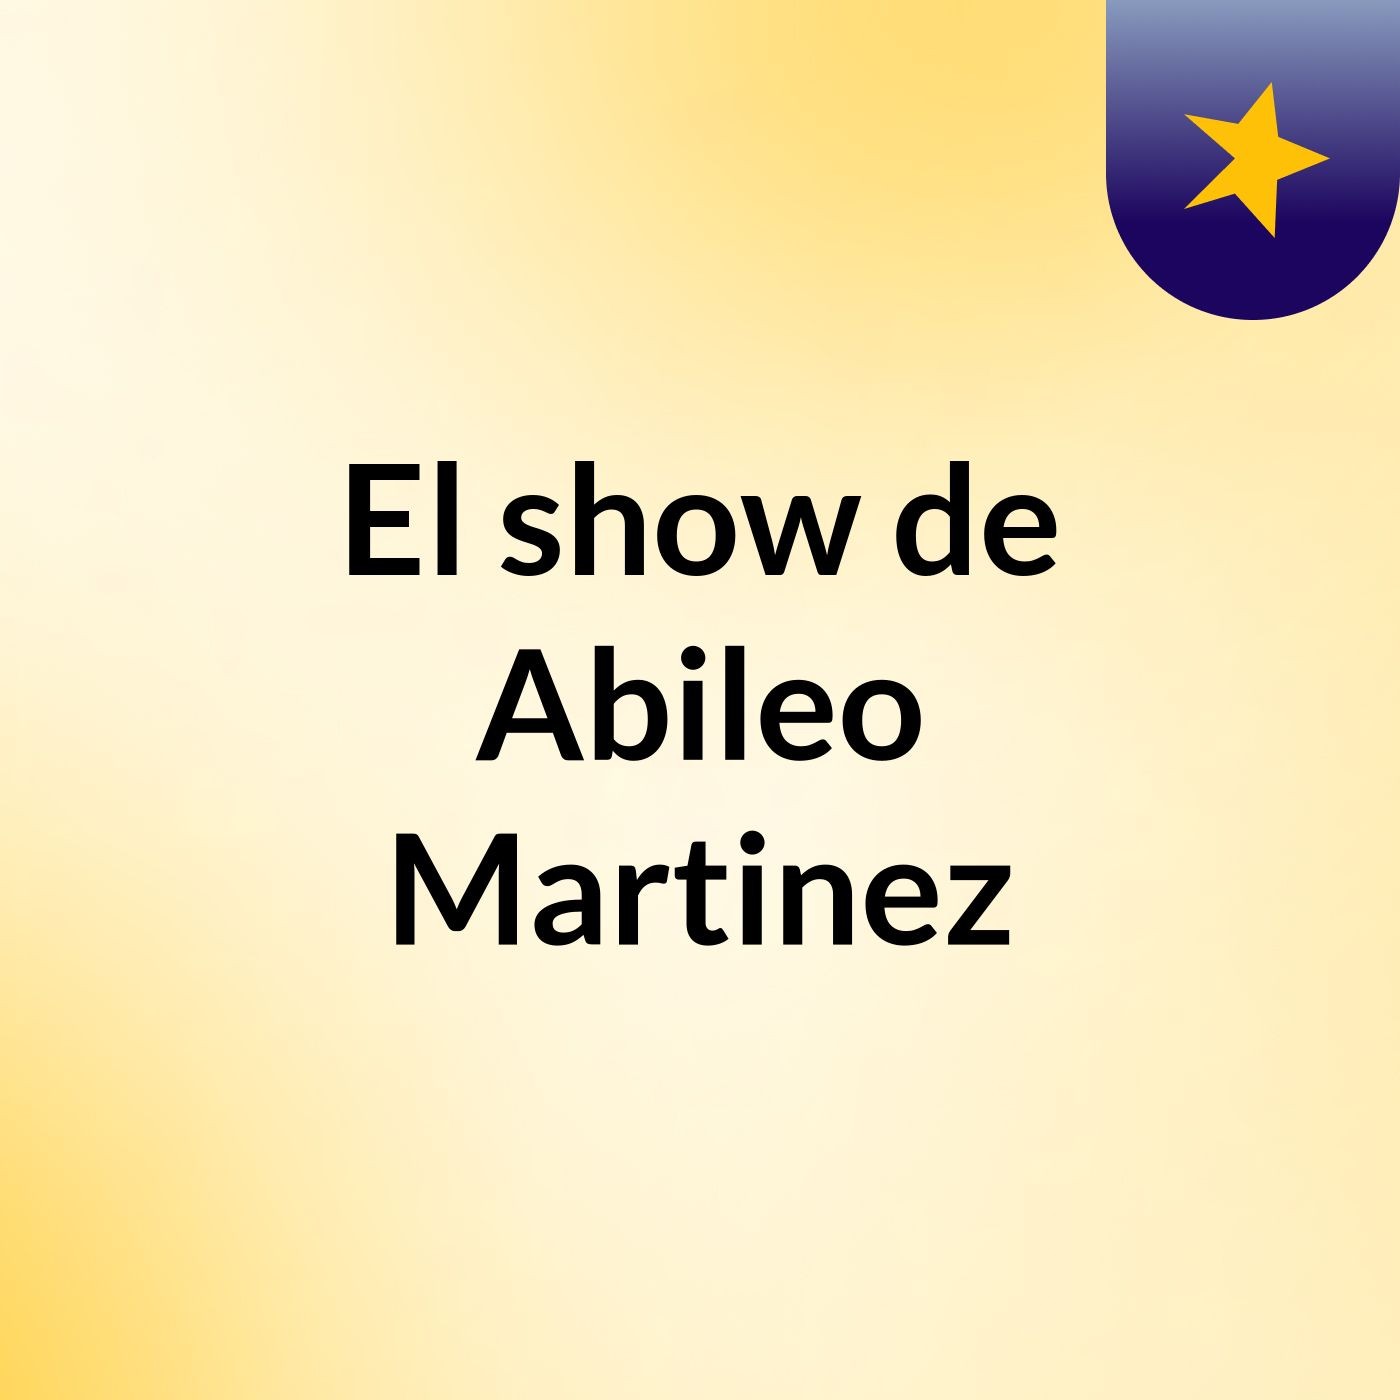 El show de Abileo Martinez